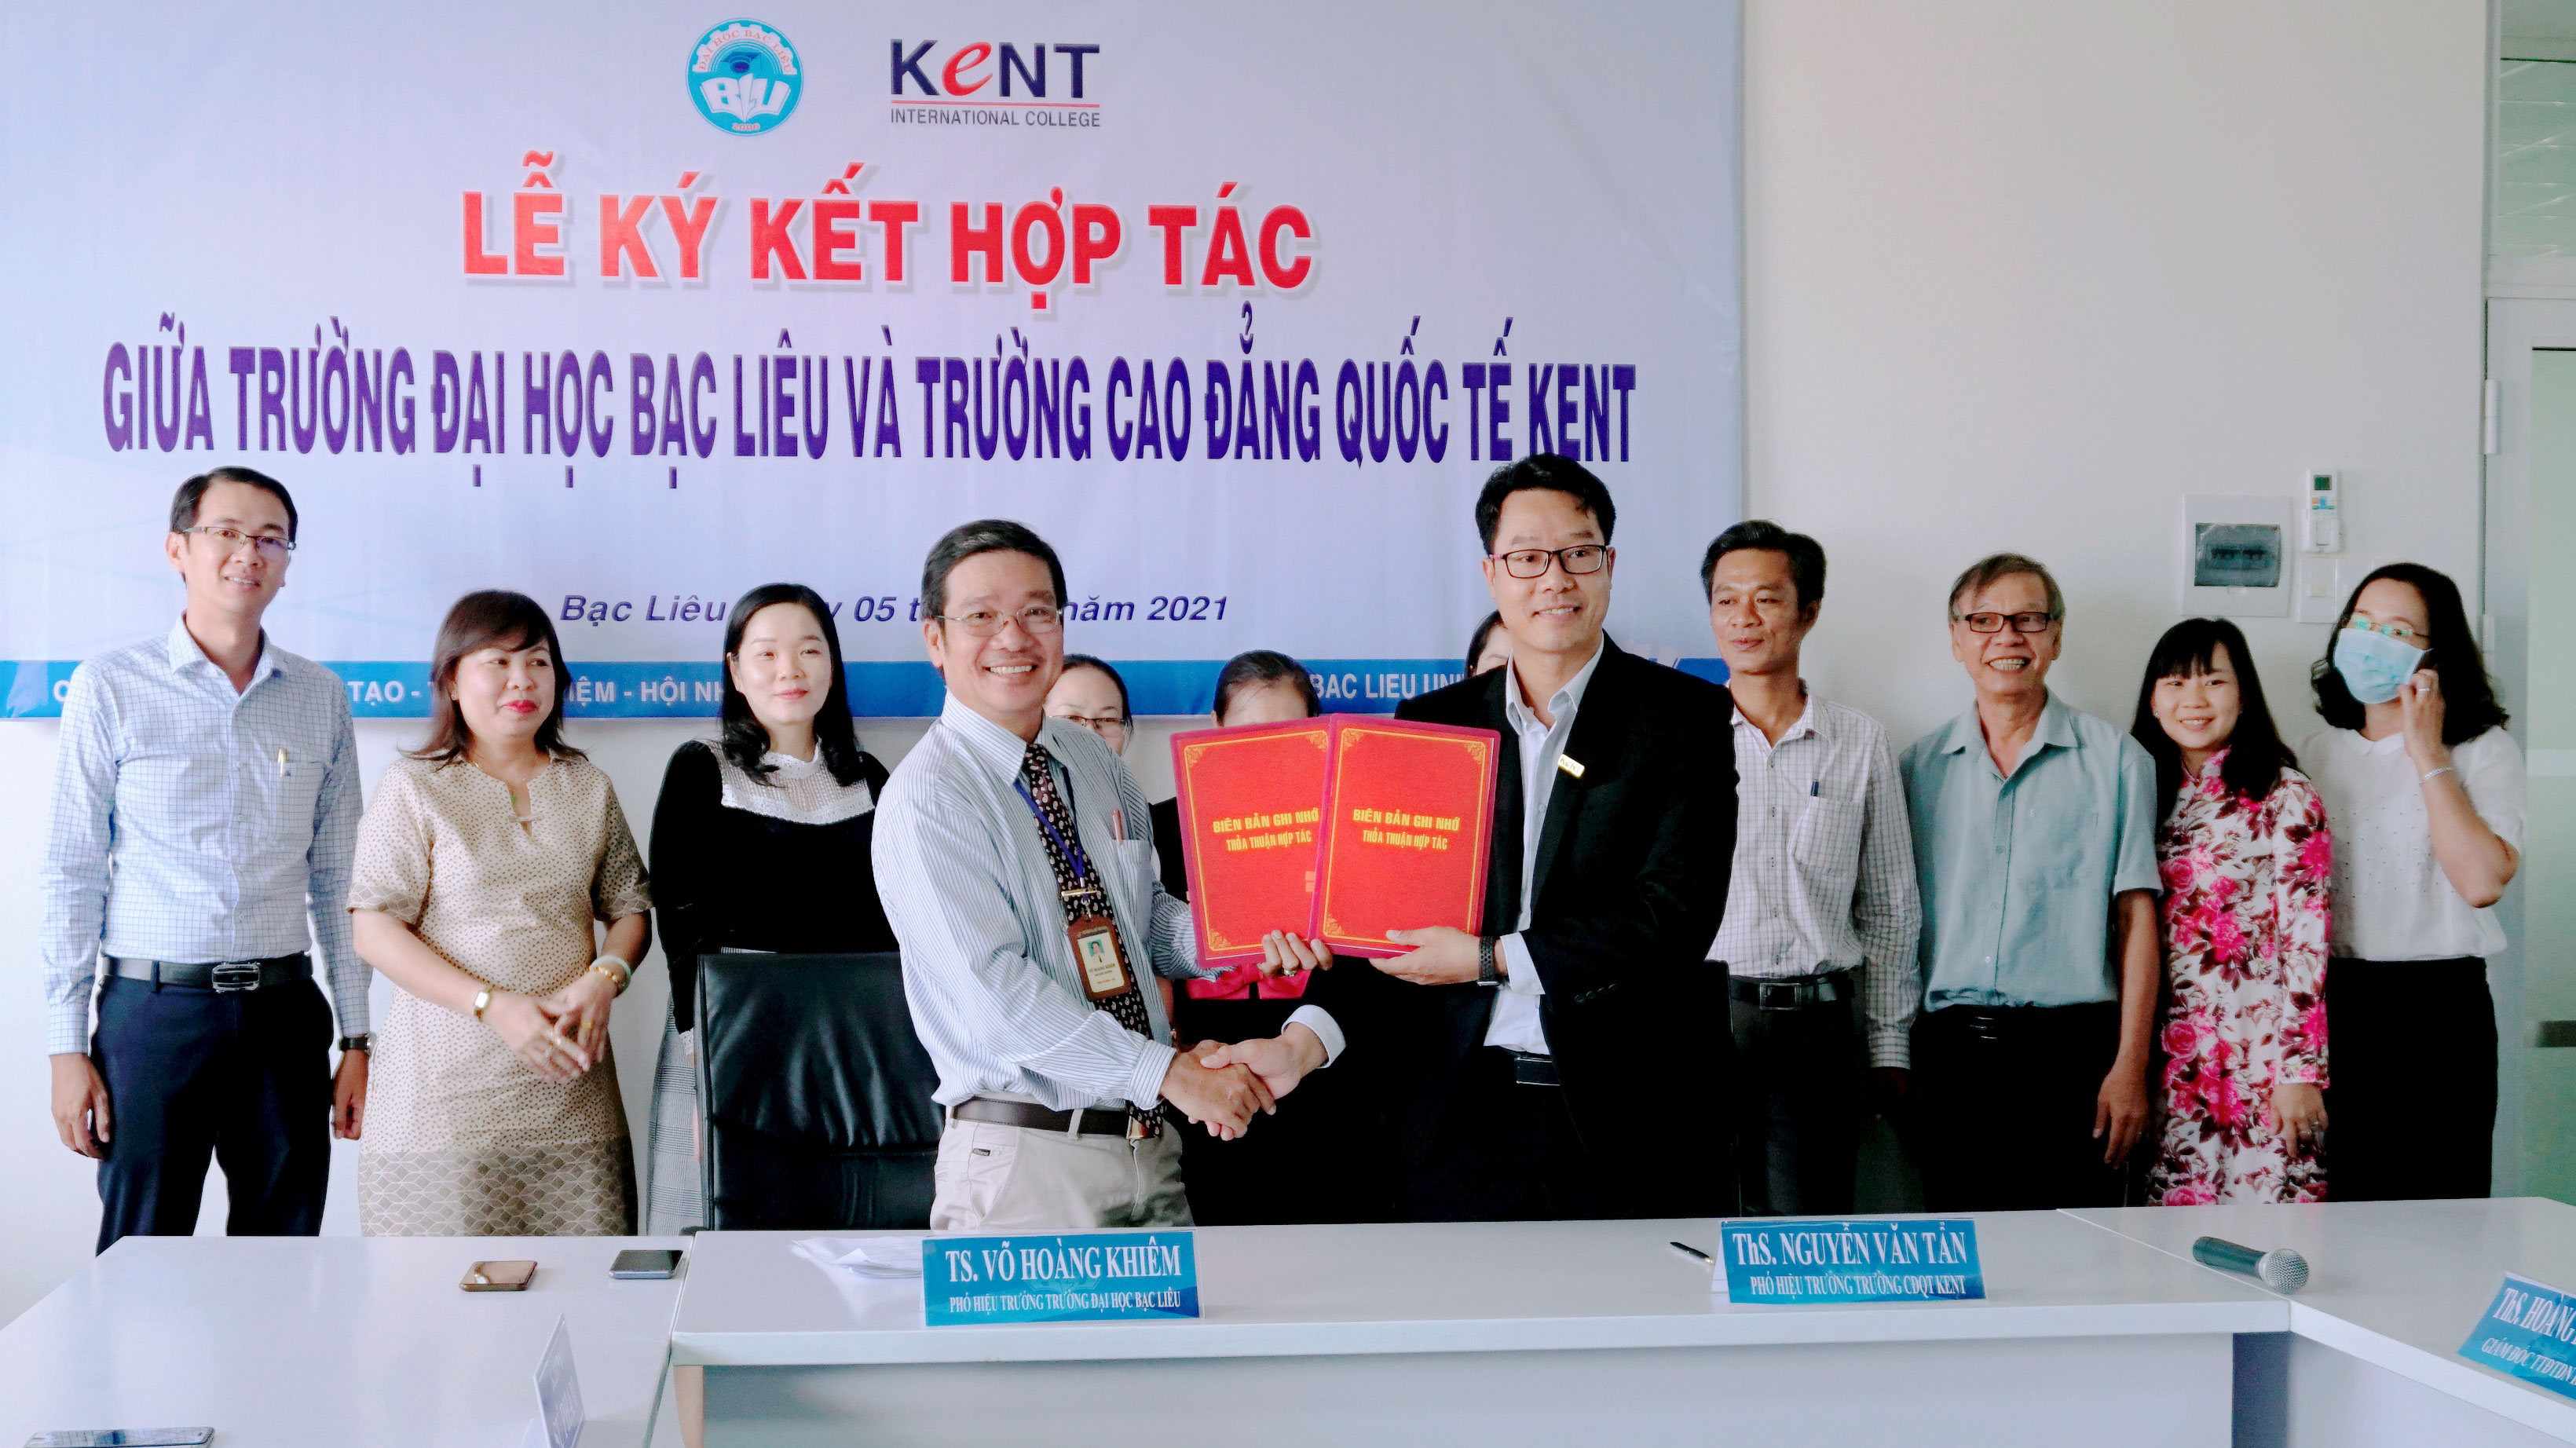 Trường Đại học Bạc Liêu ký kết thỏa thuận hợp tác với Trường Cao đẳng Quốc  tế KENT